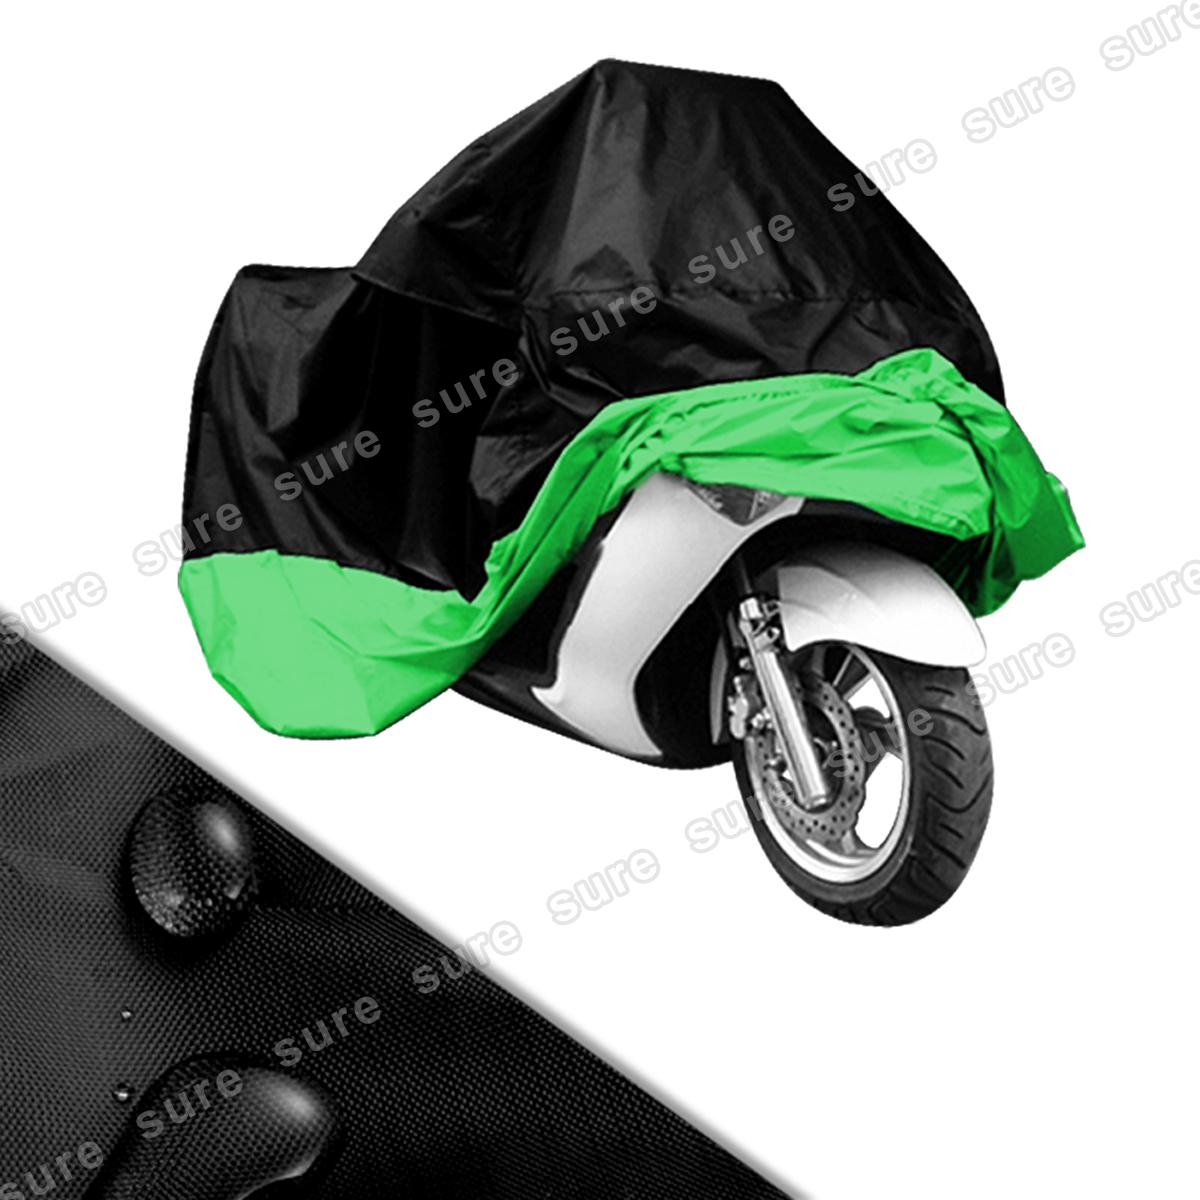 Waterproof motorcycle cover waterproof fits harley davidson outdoor green + bag